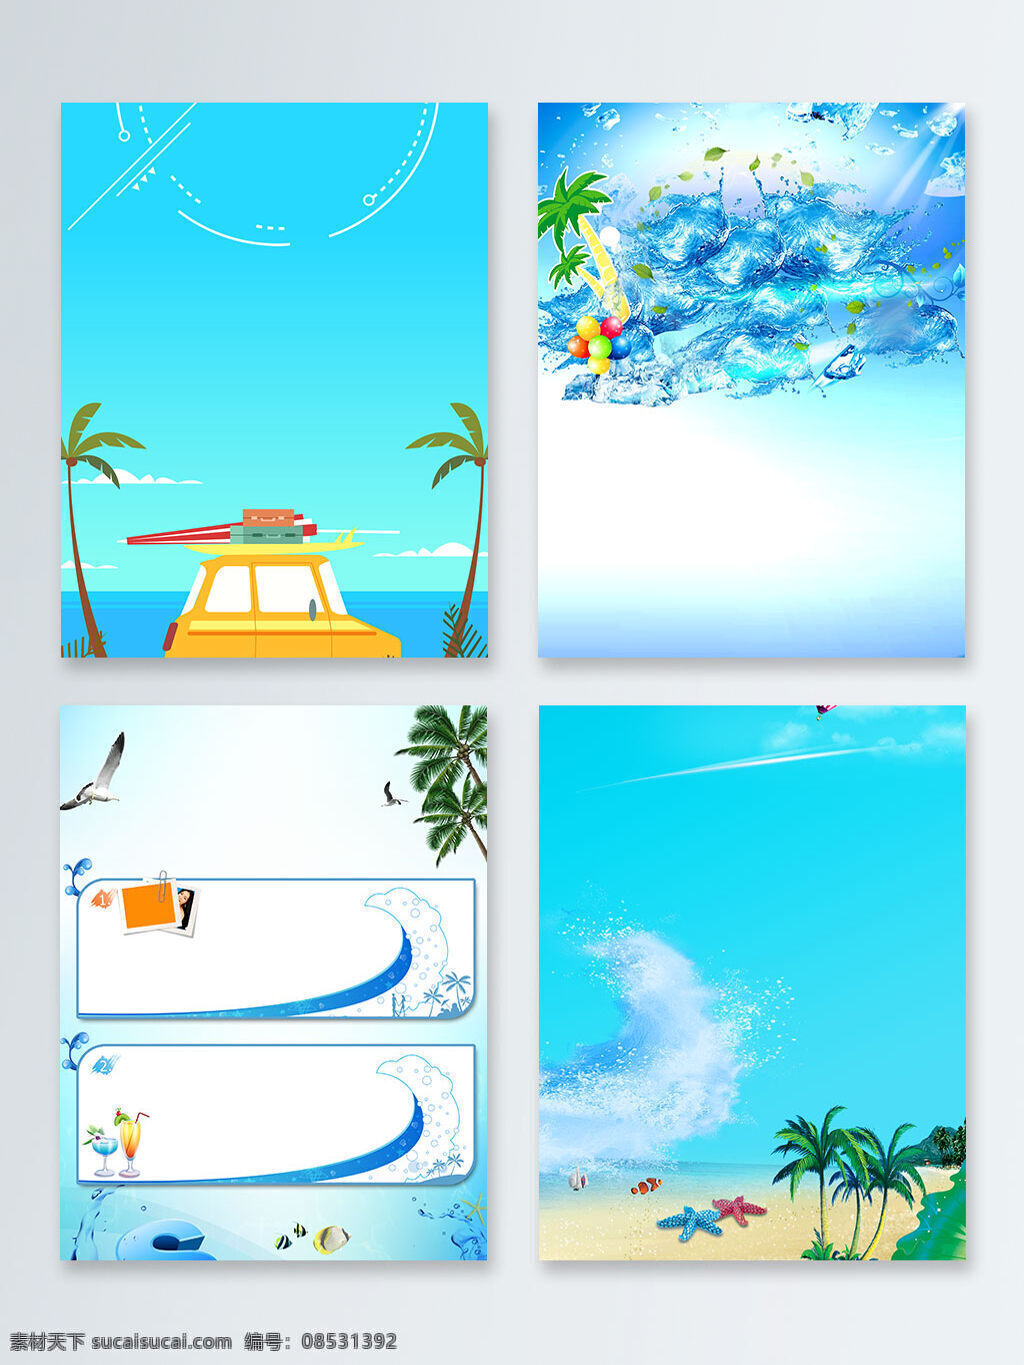 卡通 夏天 惬意 沙滩 风 蓝色 广告 背景 蓝色背景 饮料 汽车 冰块 惬意沙滩风 海鸥 椰子树 相片 小鱼 海水 海星